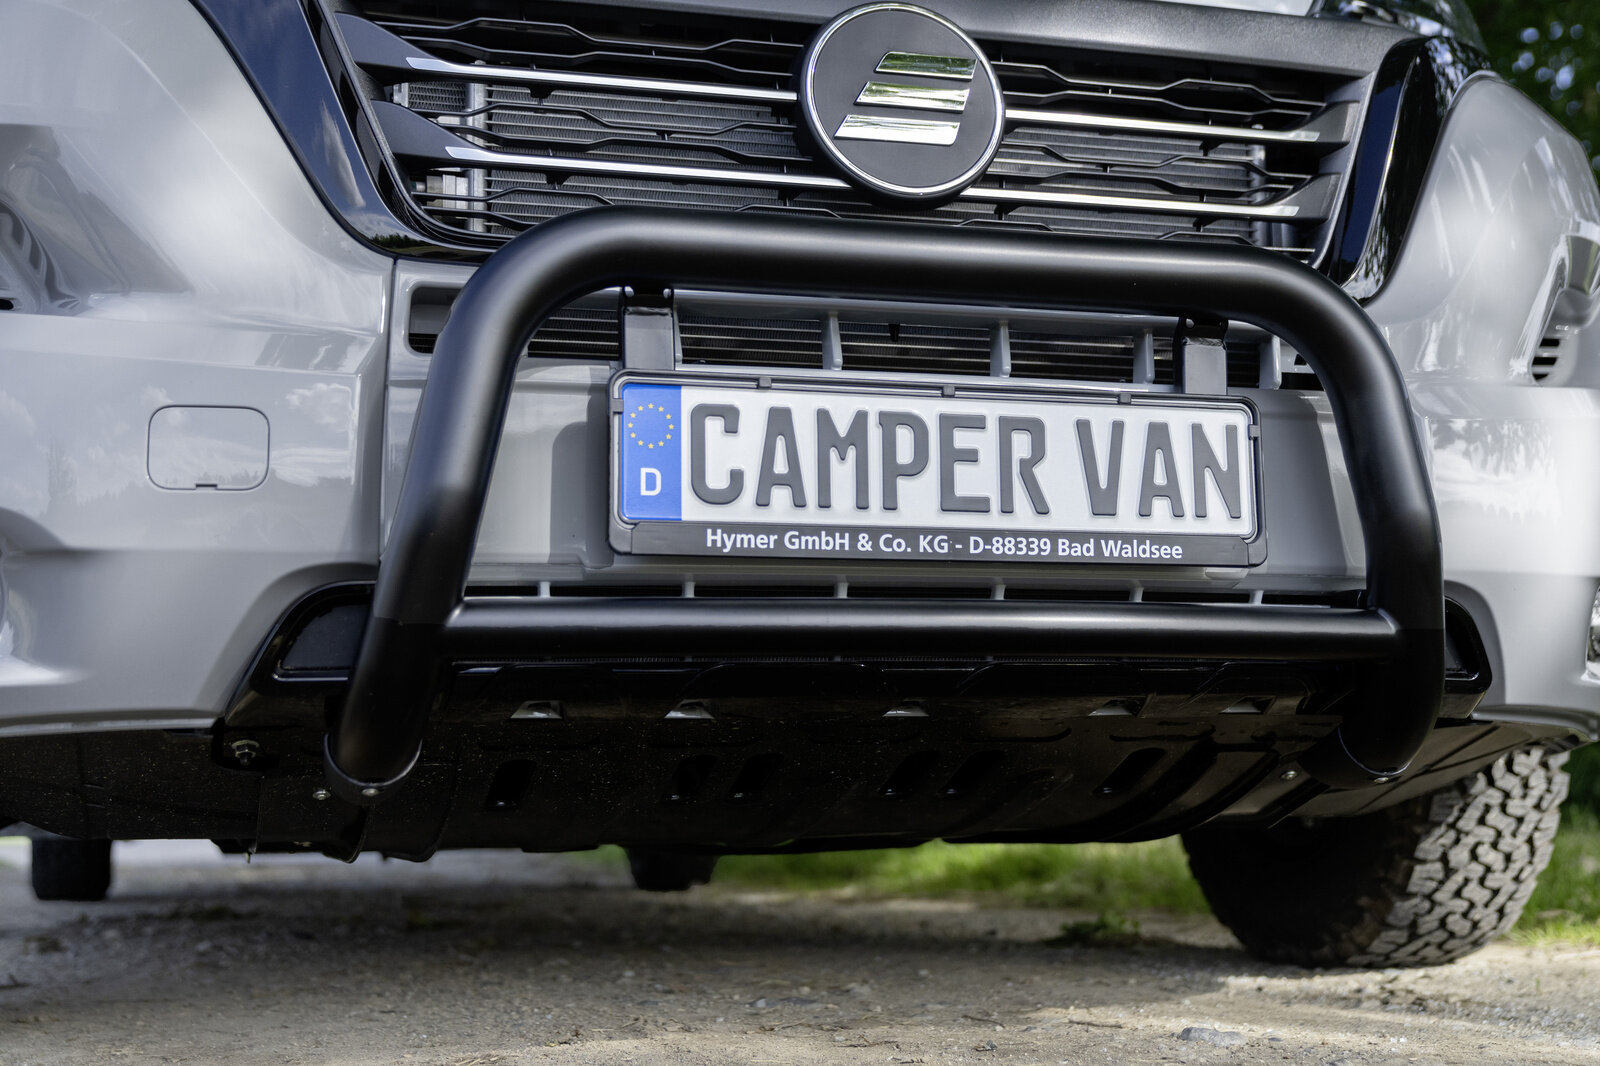 HYMER Fiat camper vans at a glance | HYMER camper van